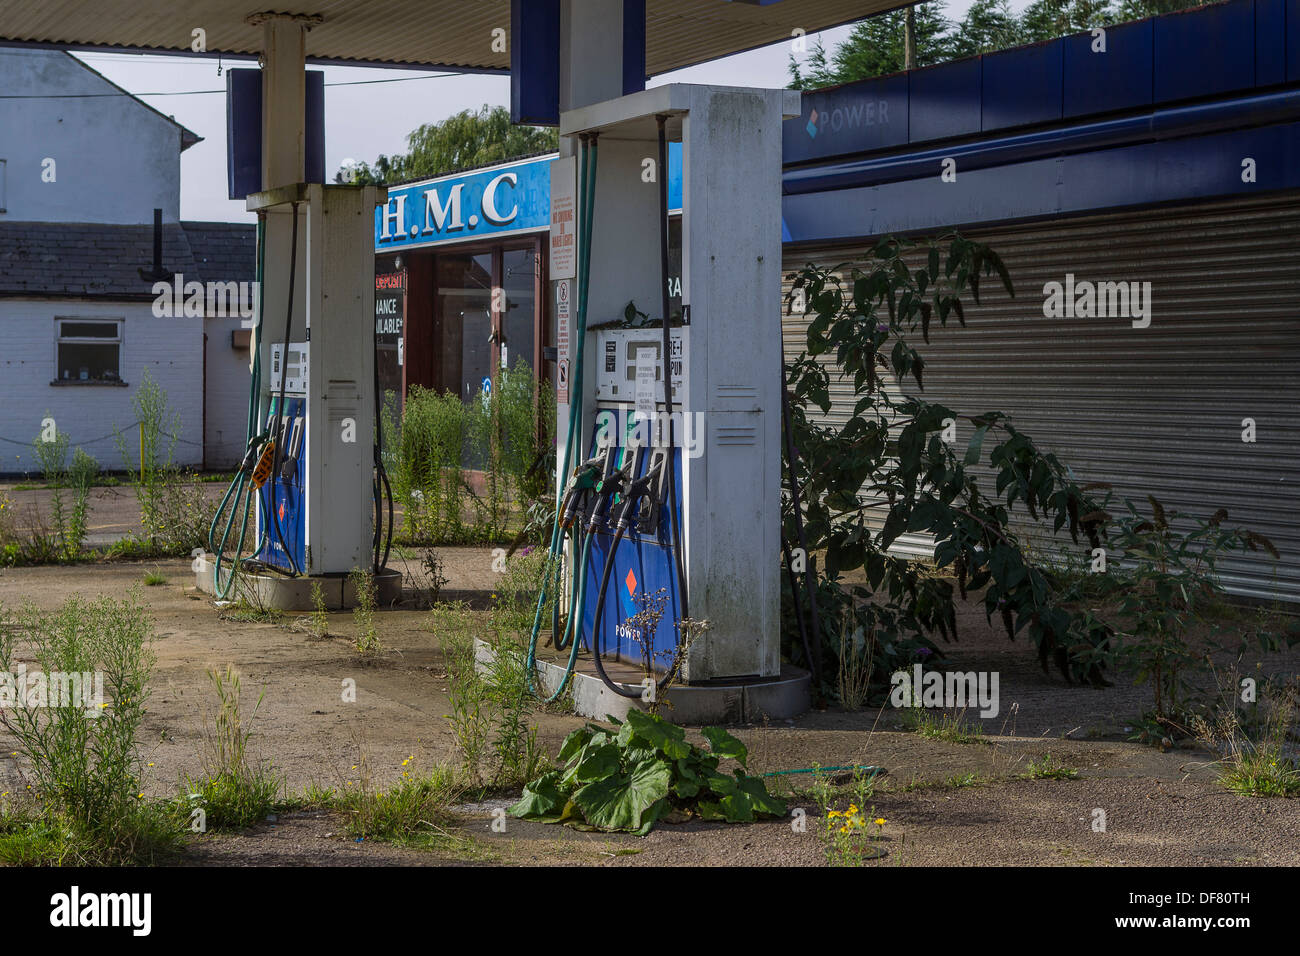 Las plantas de reclamar una estación de combustible, abandonados y en desuso en Heath y alcance. Foto de stock